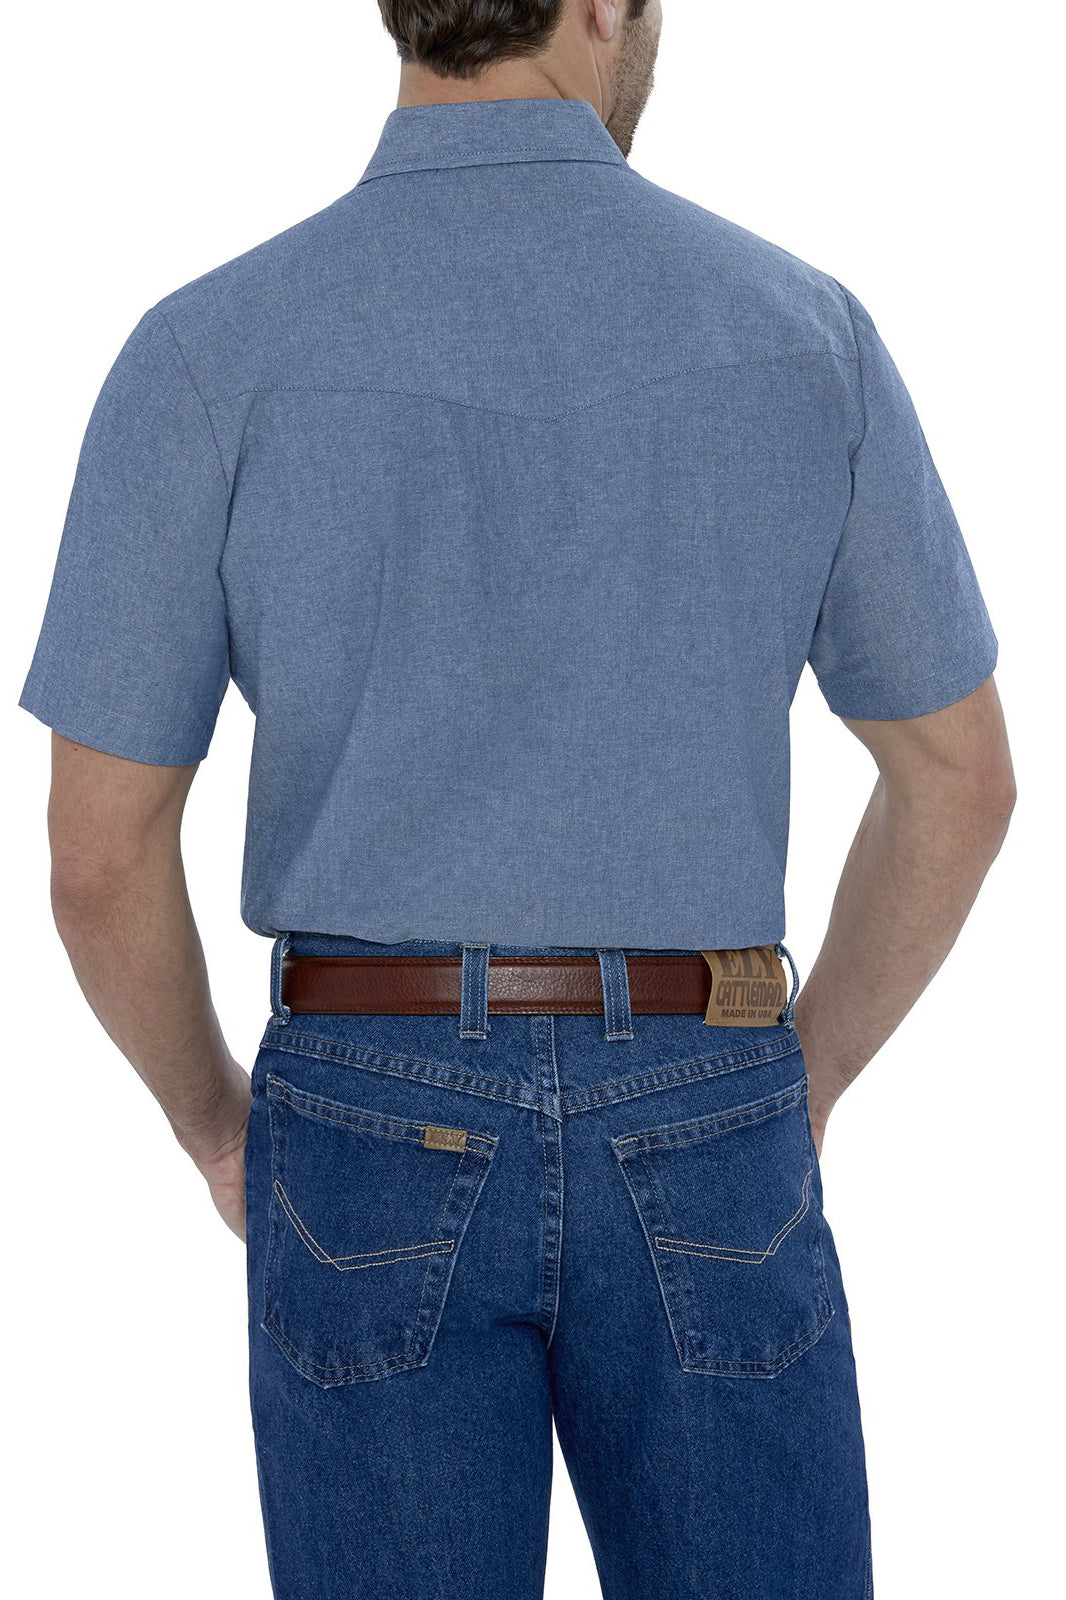 Wrangler Men's Short Sleeve Work Shirt